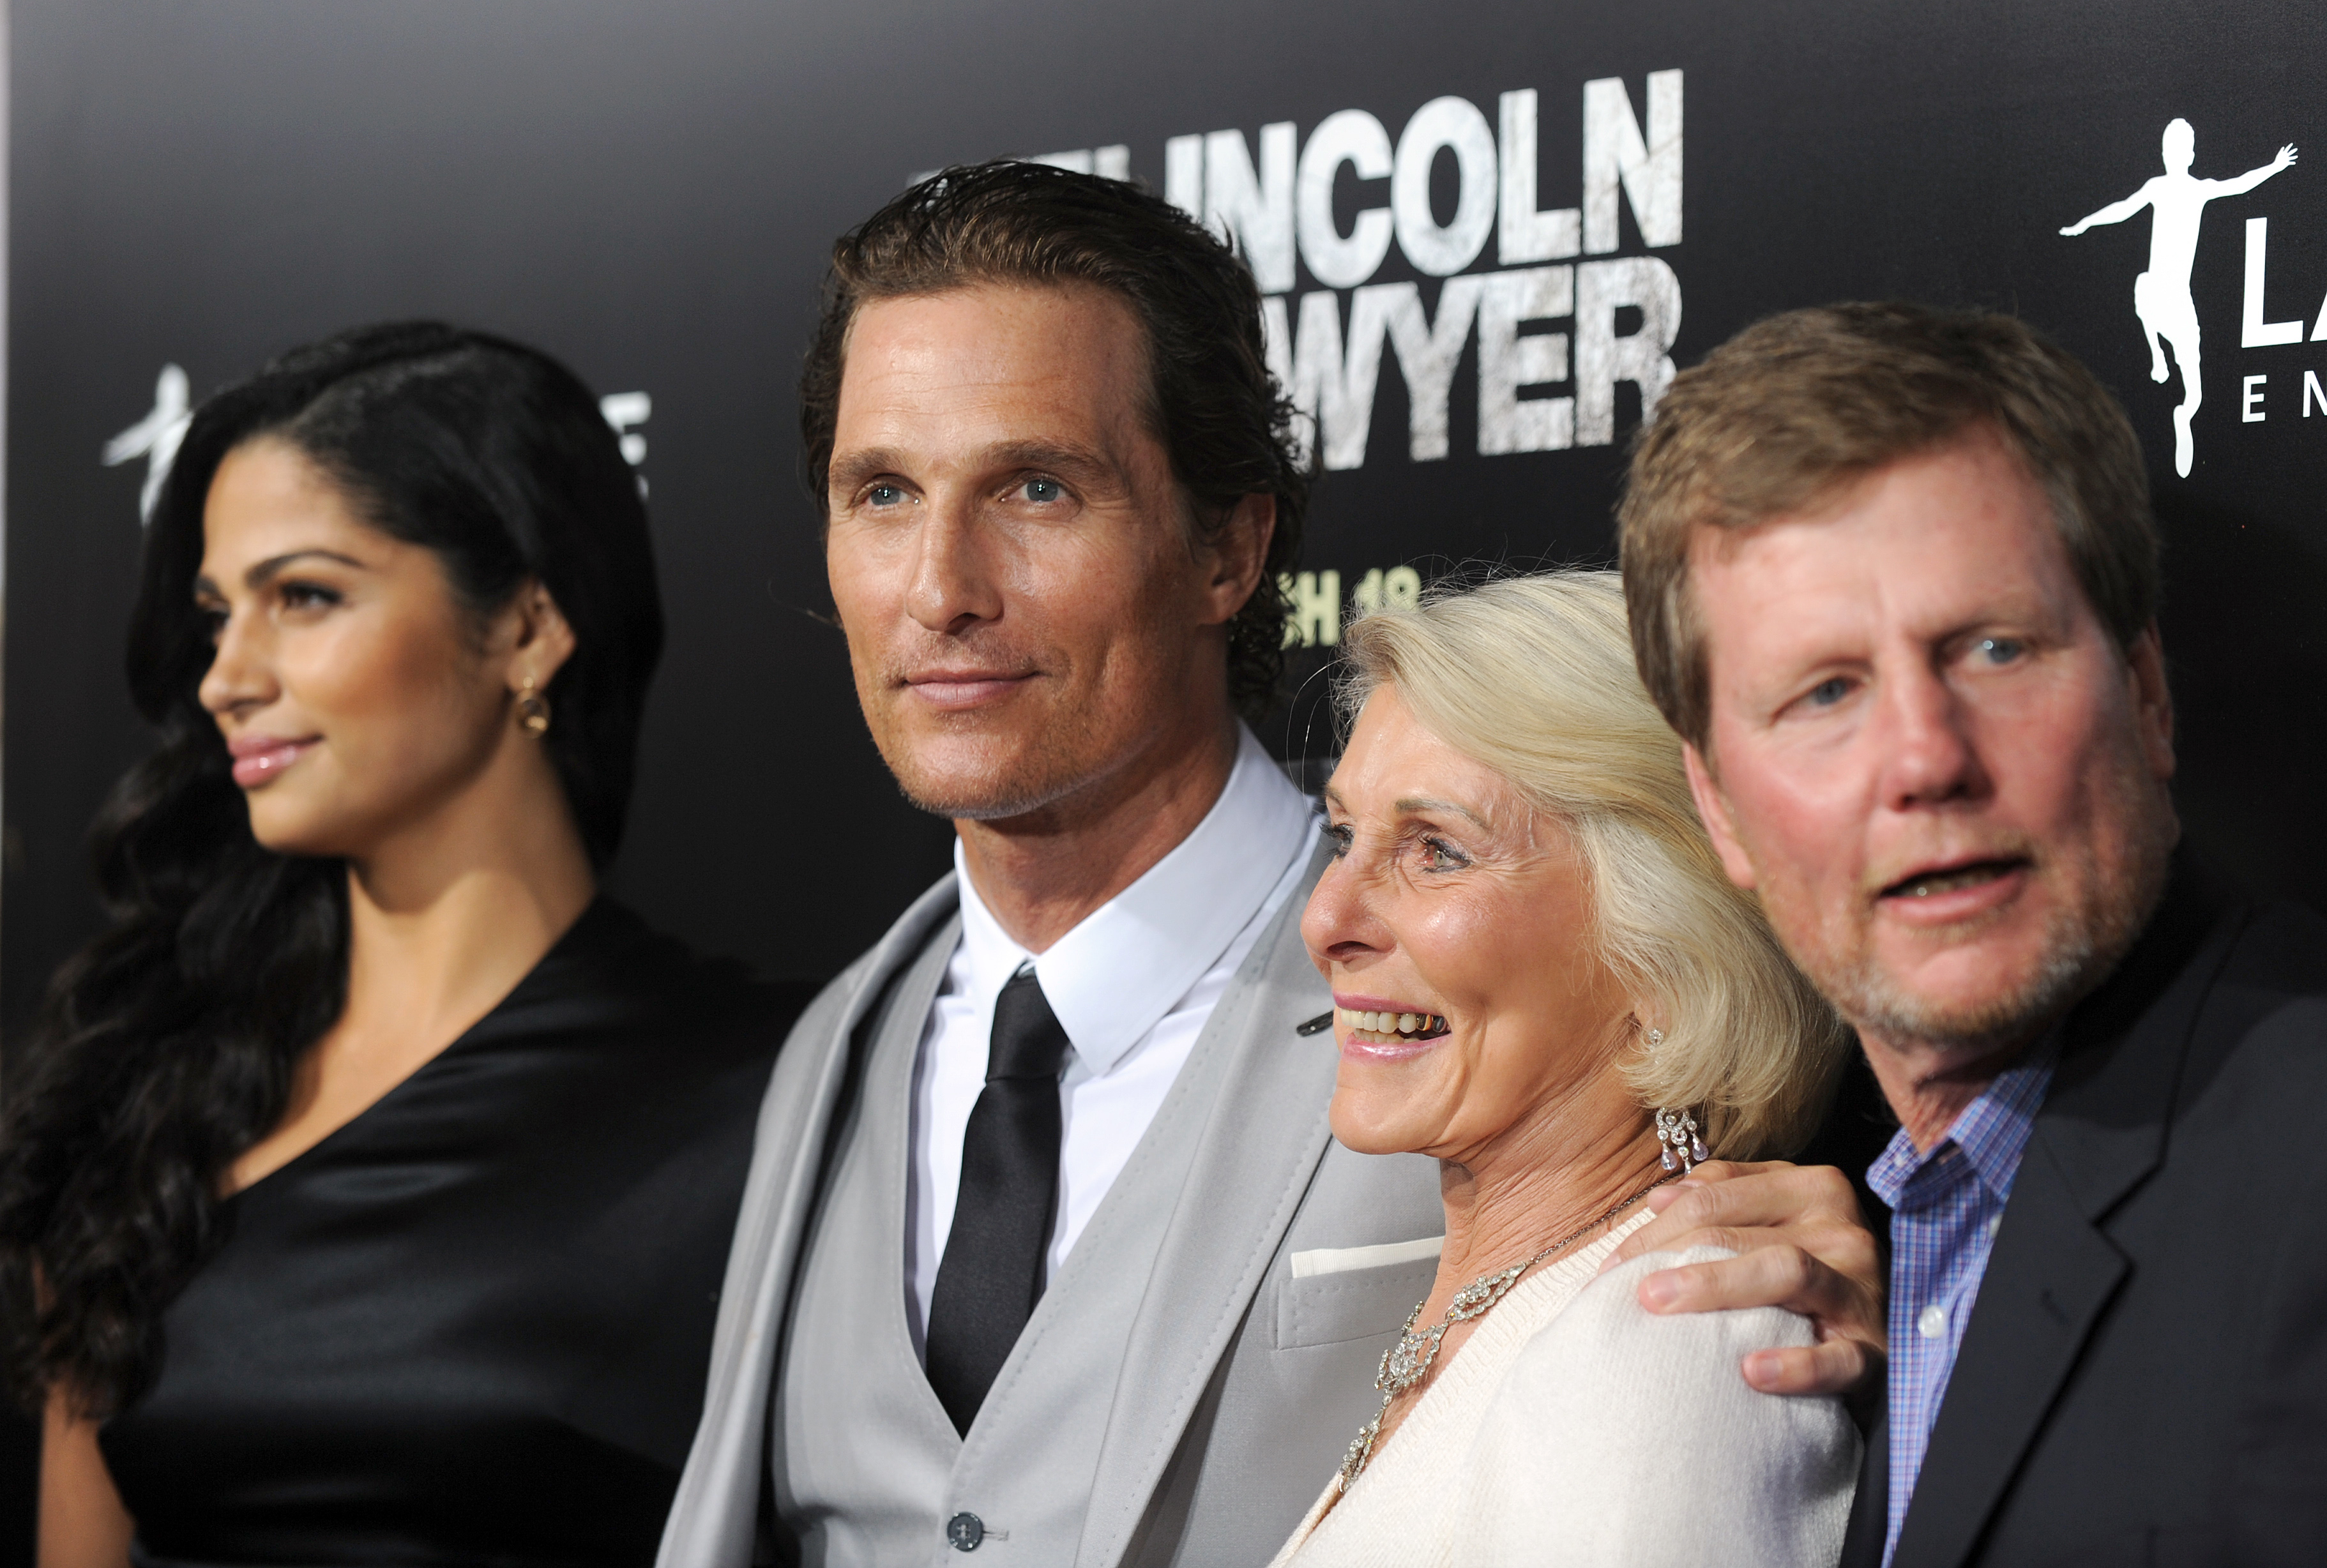 The McConaughey family